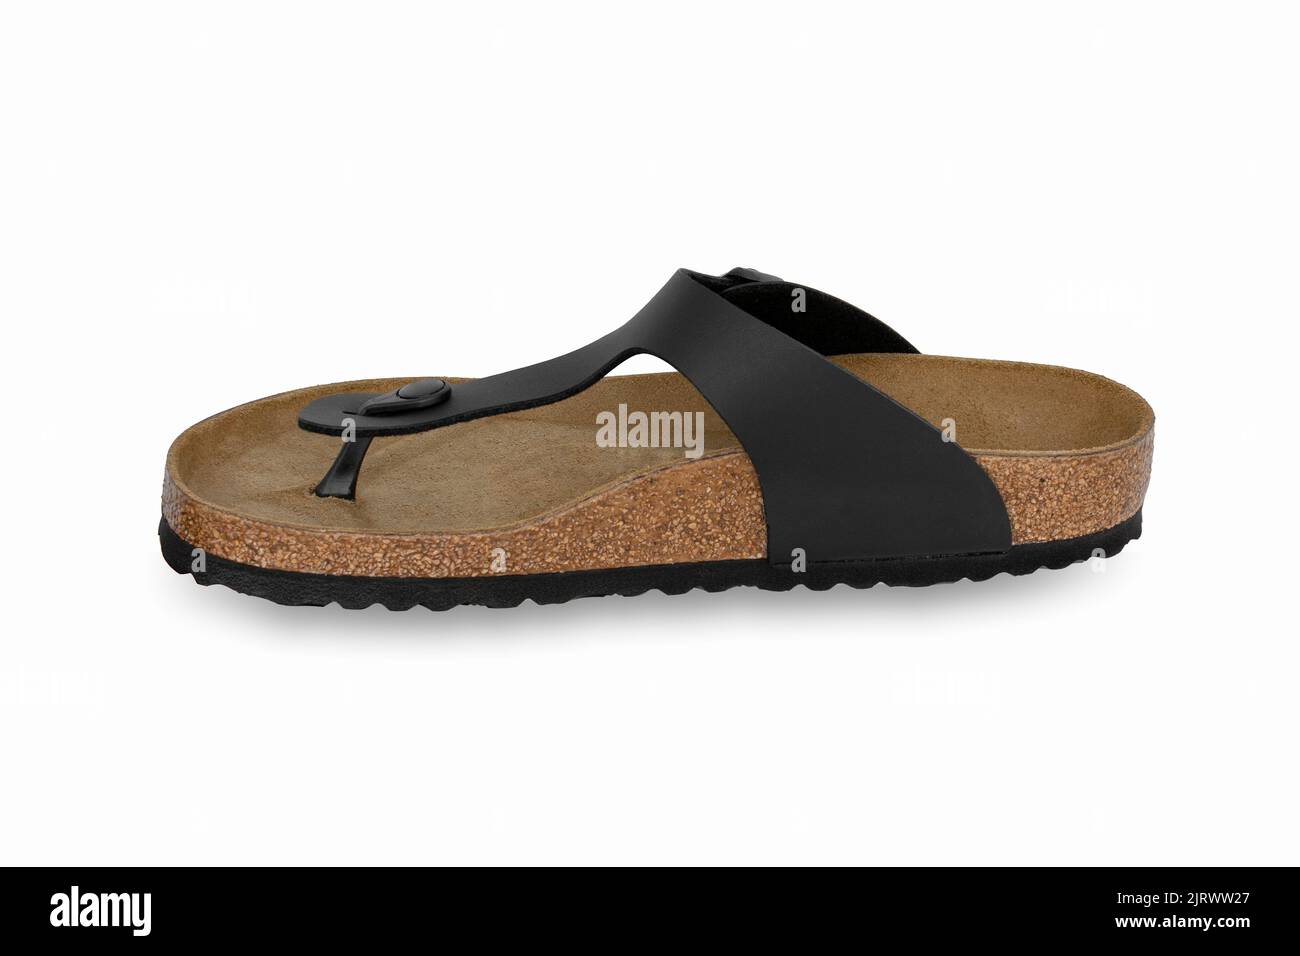 vista laterale di scarpe sandali flip-flop uomo, isolate su sfondo bianco Foto Stock